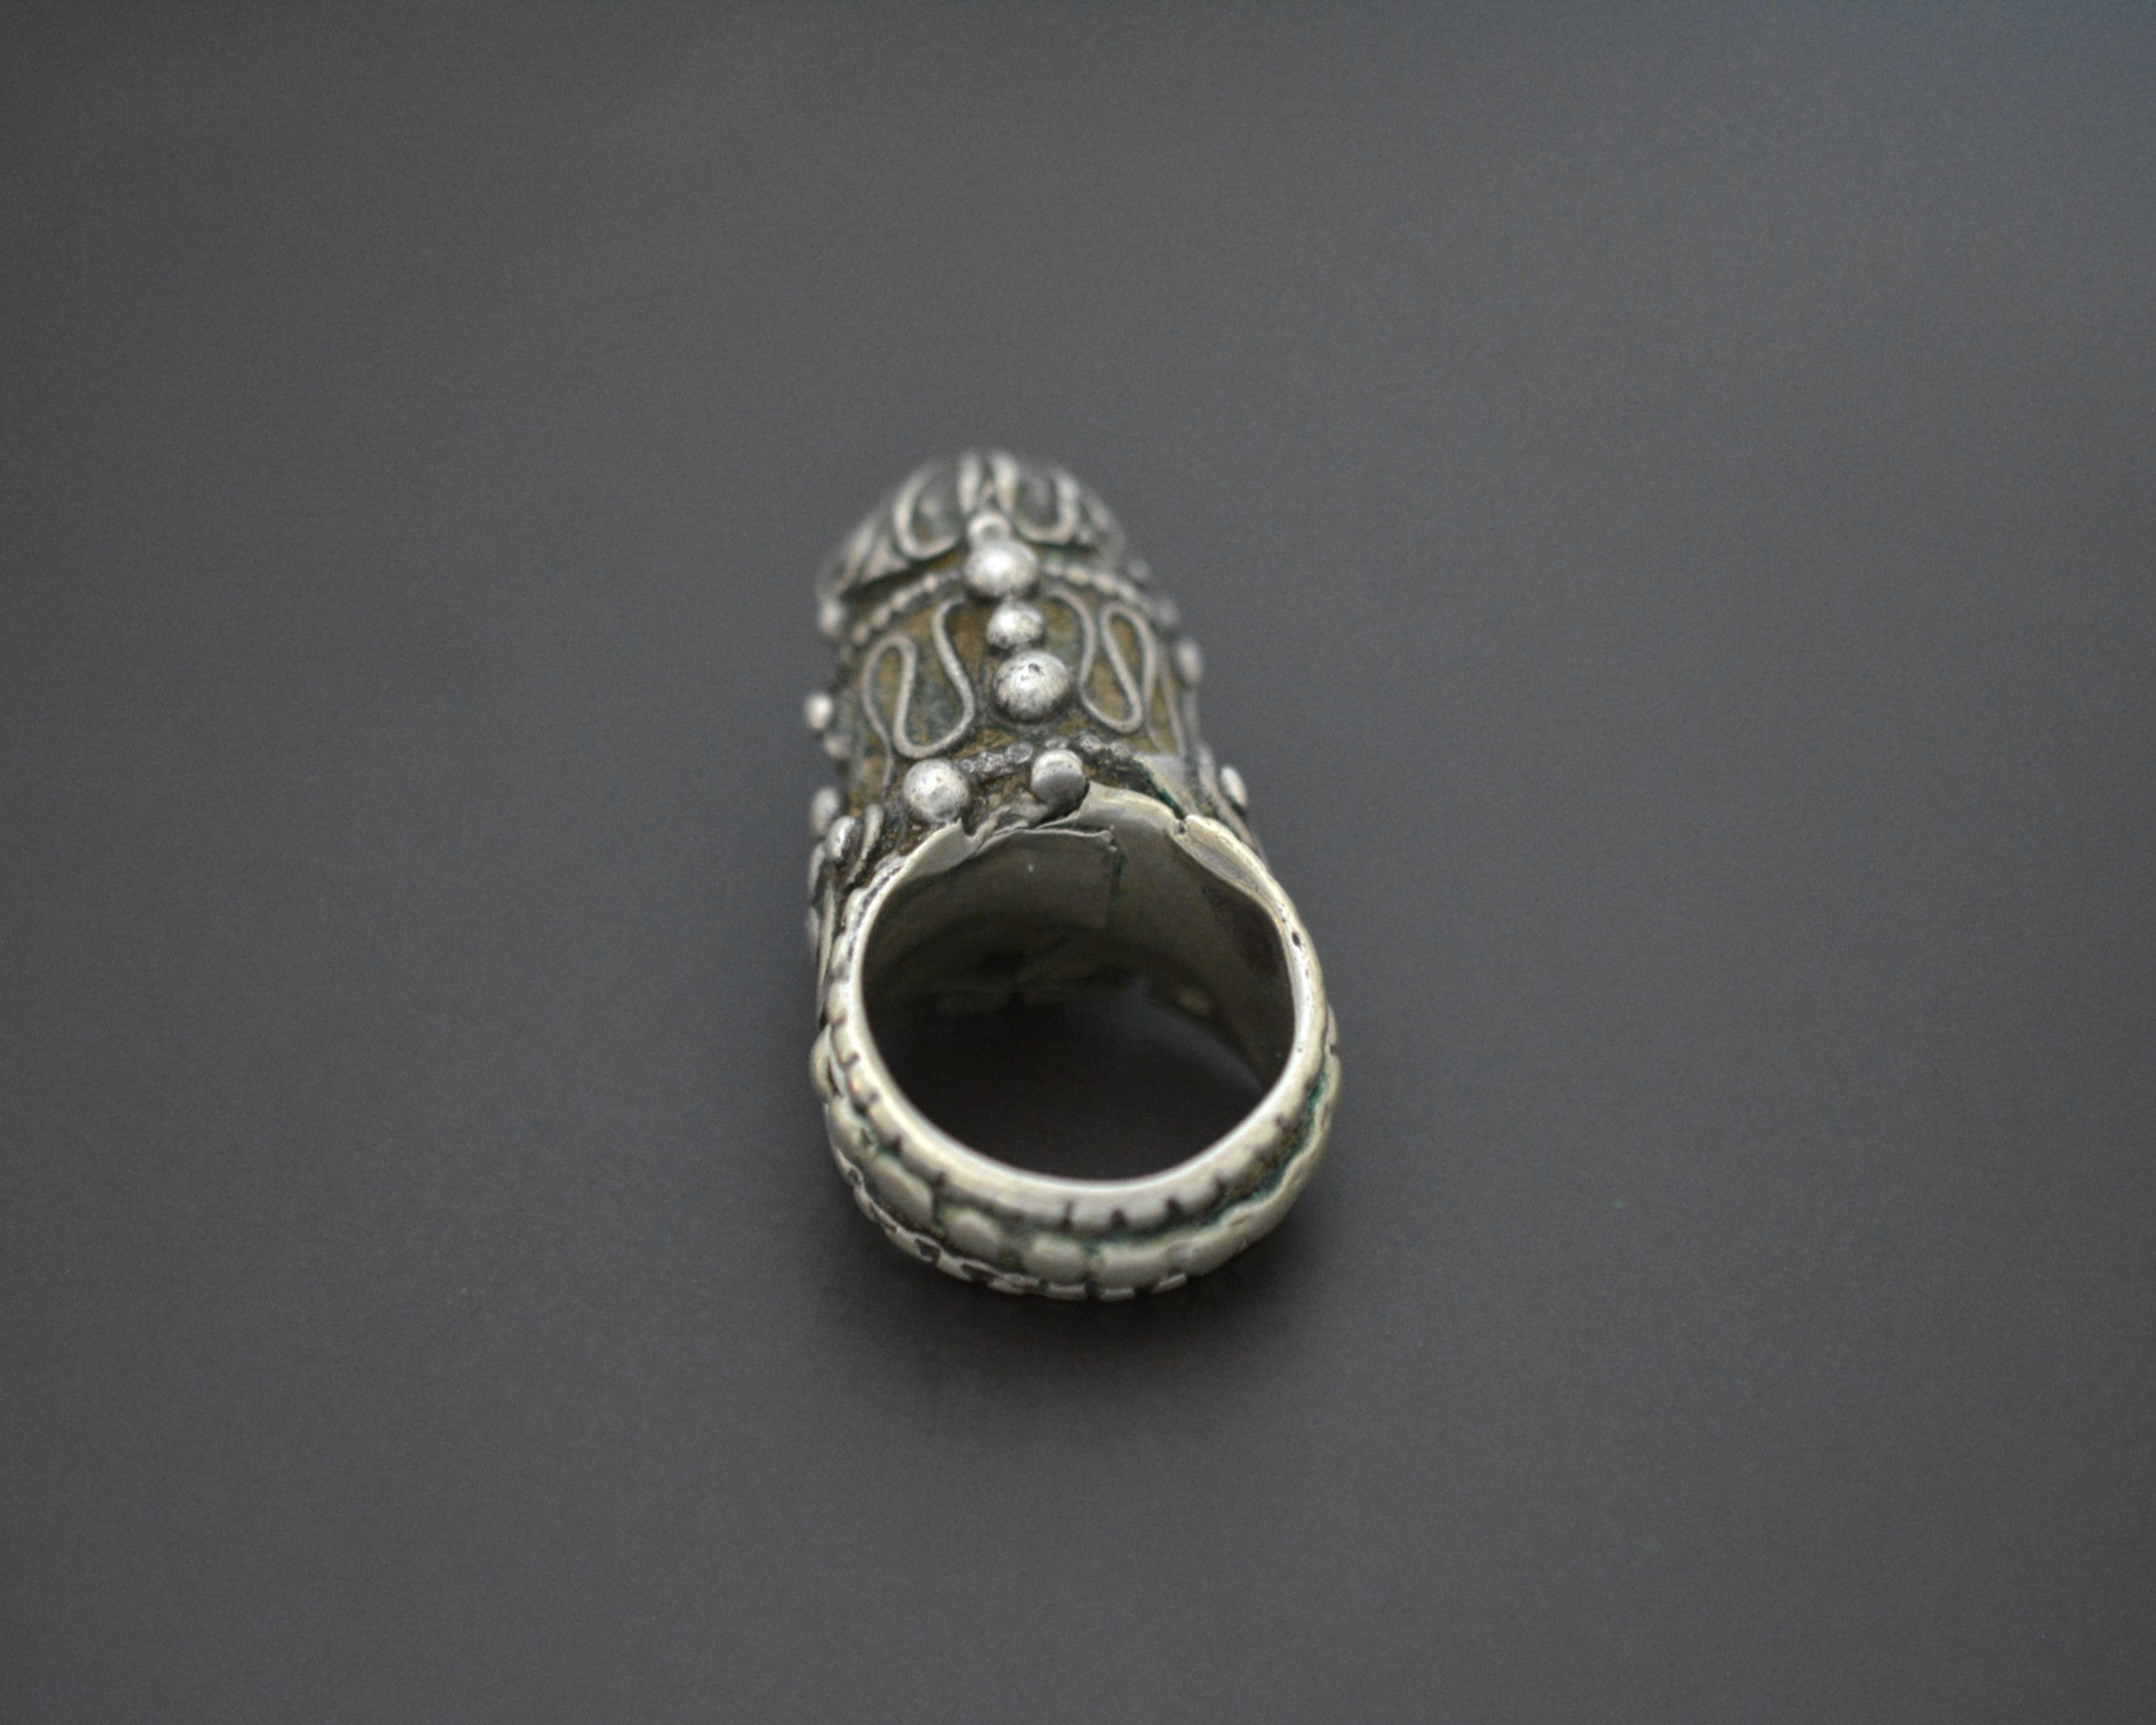 Antique Yemeni Tower Ring - Size 8.75